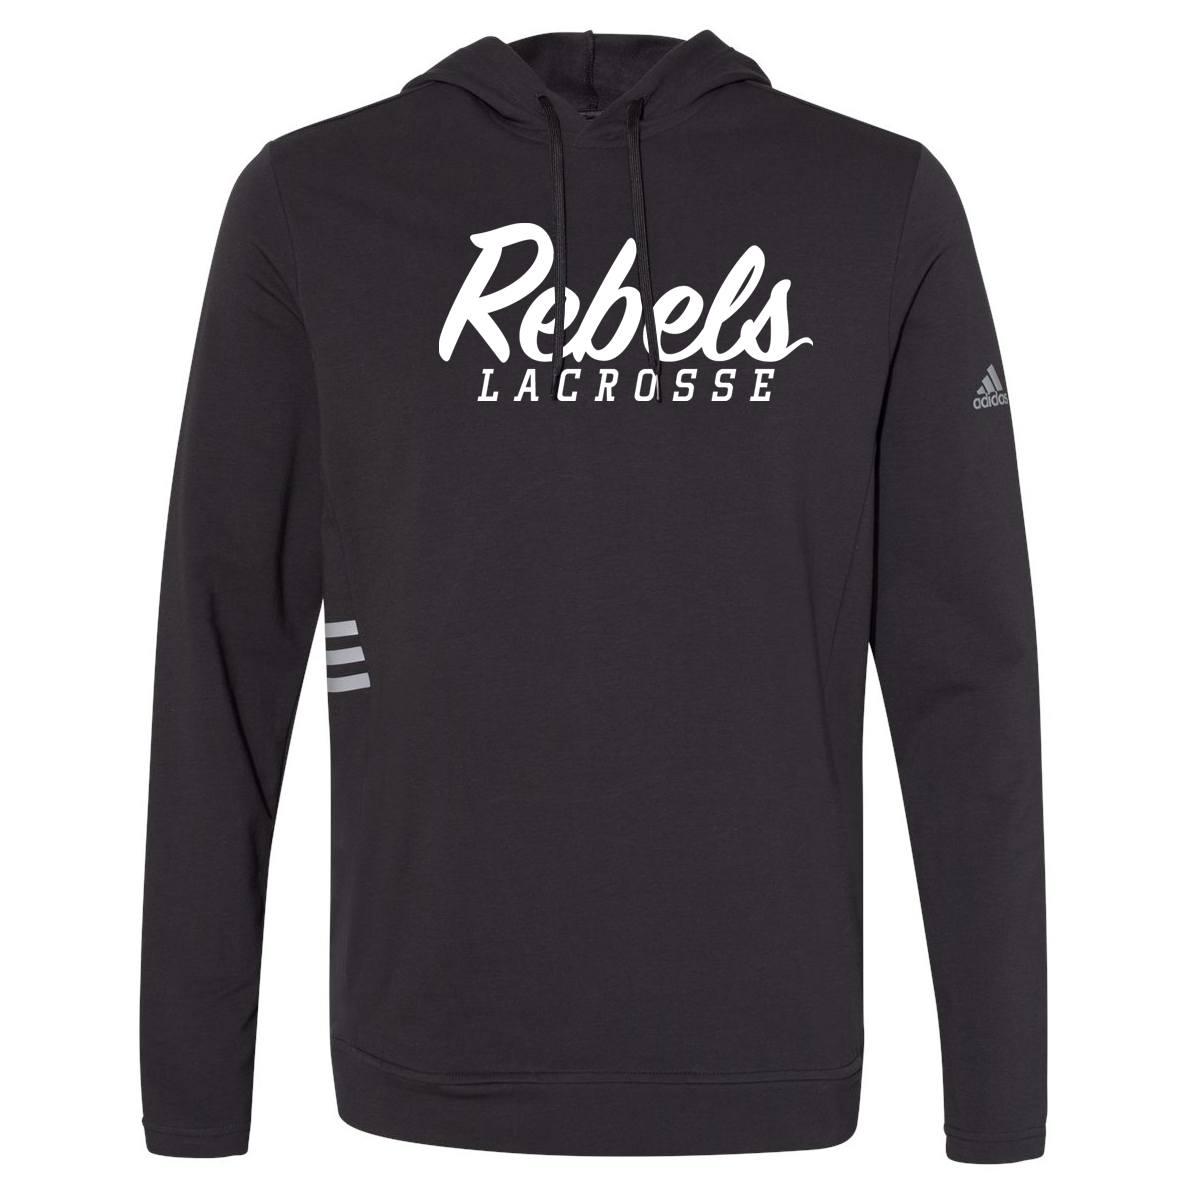 Rebels Lacrosse Adidas Sweatshirt